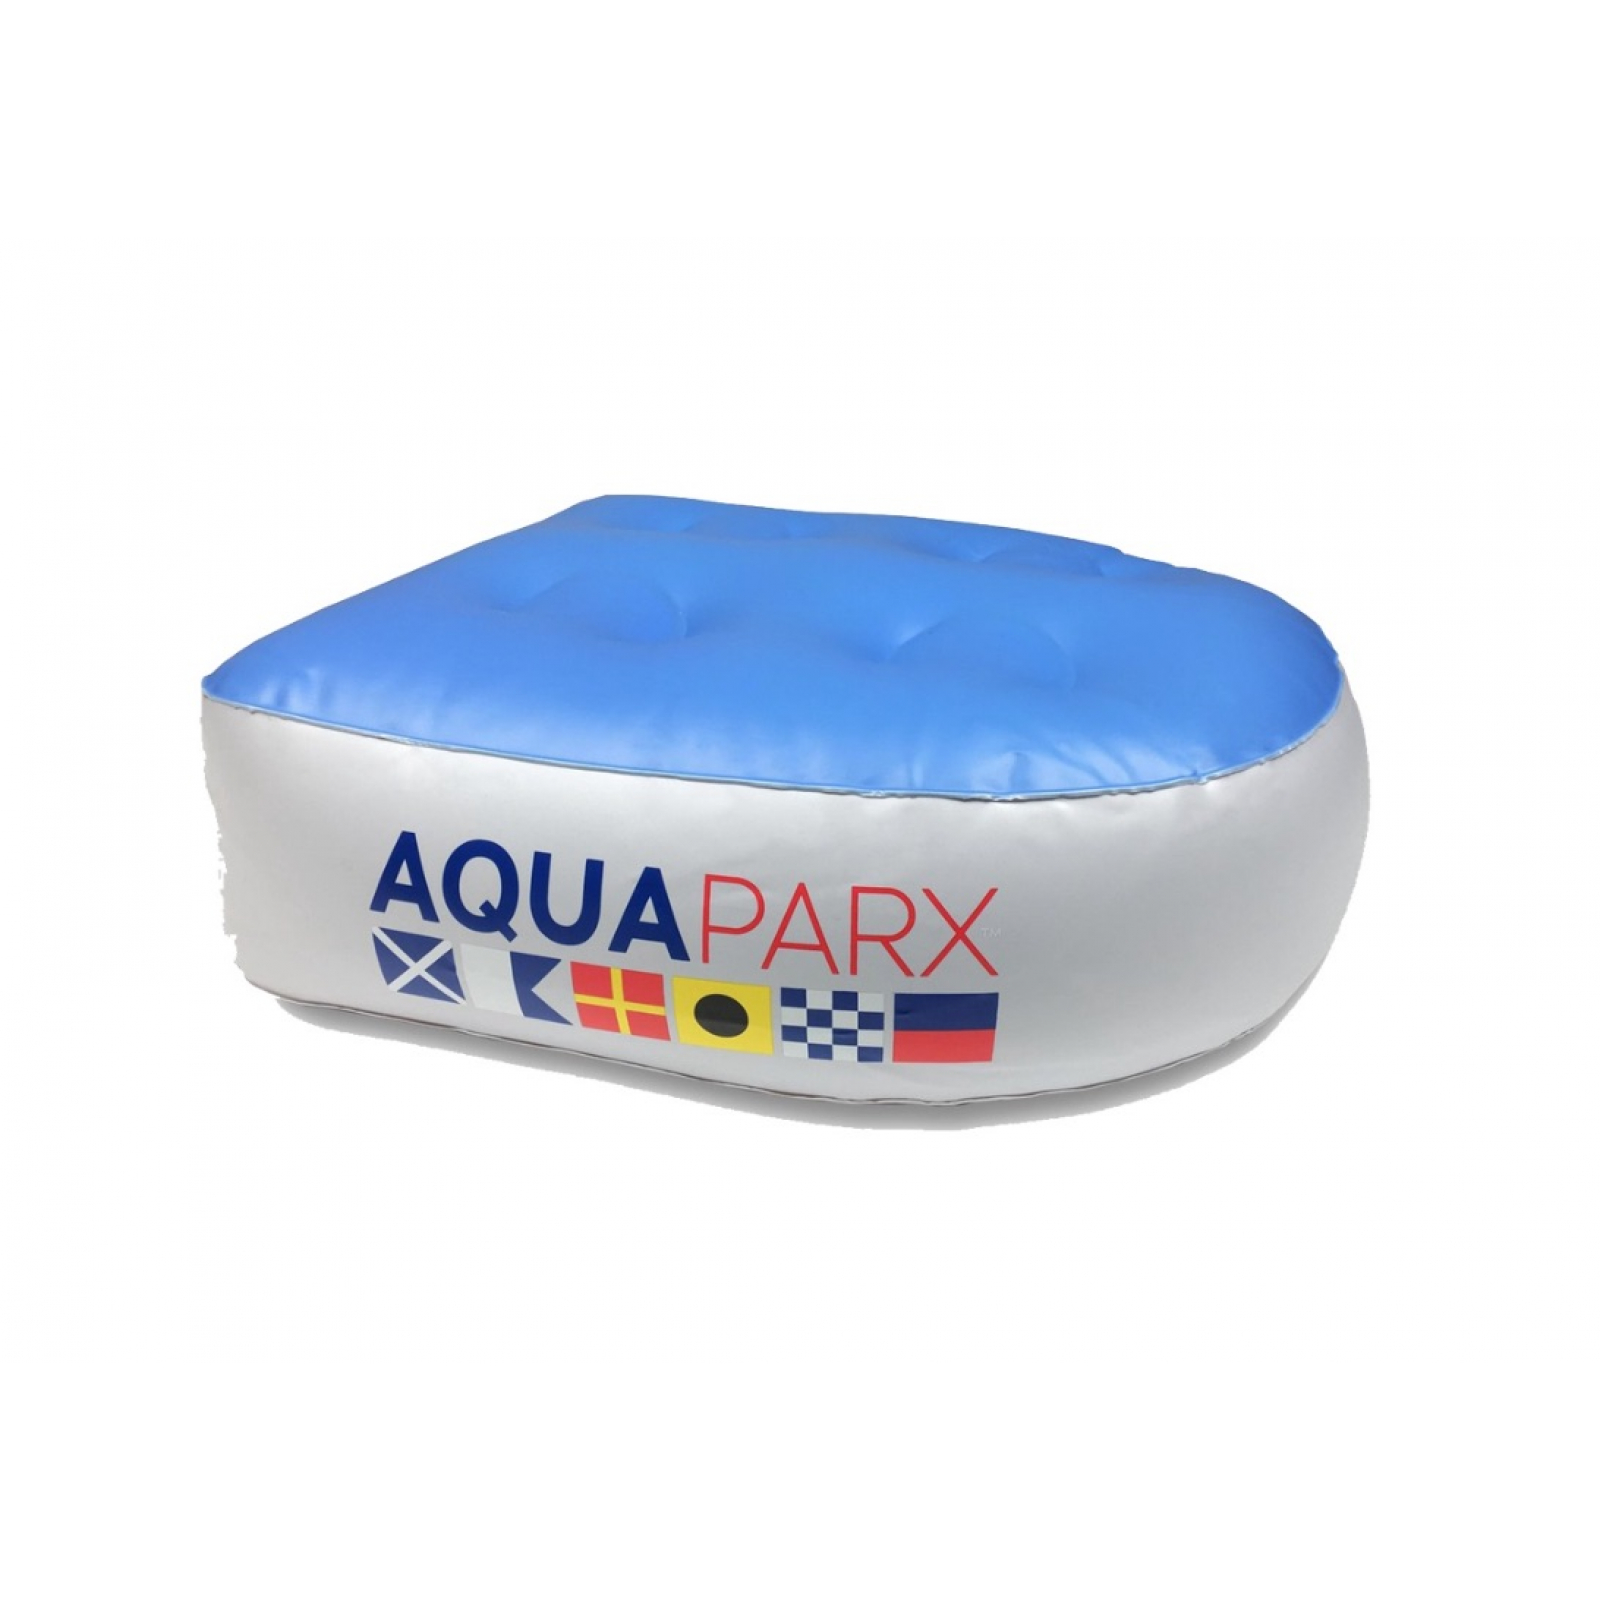 AquaParx Spa Booster Seat Wassersitzkissen Poolkissen Sitzerhöhung für Whirlpools und Pools